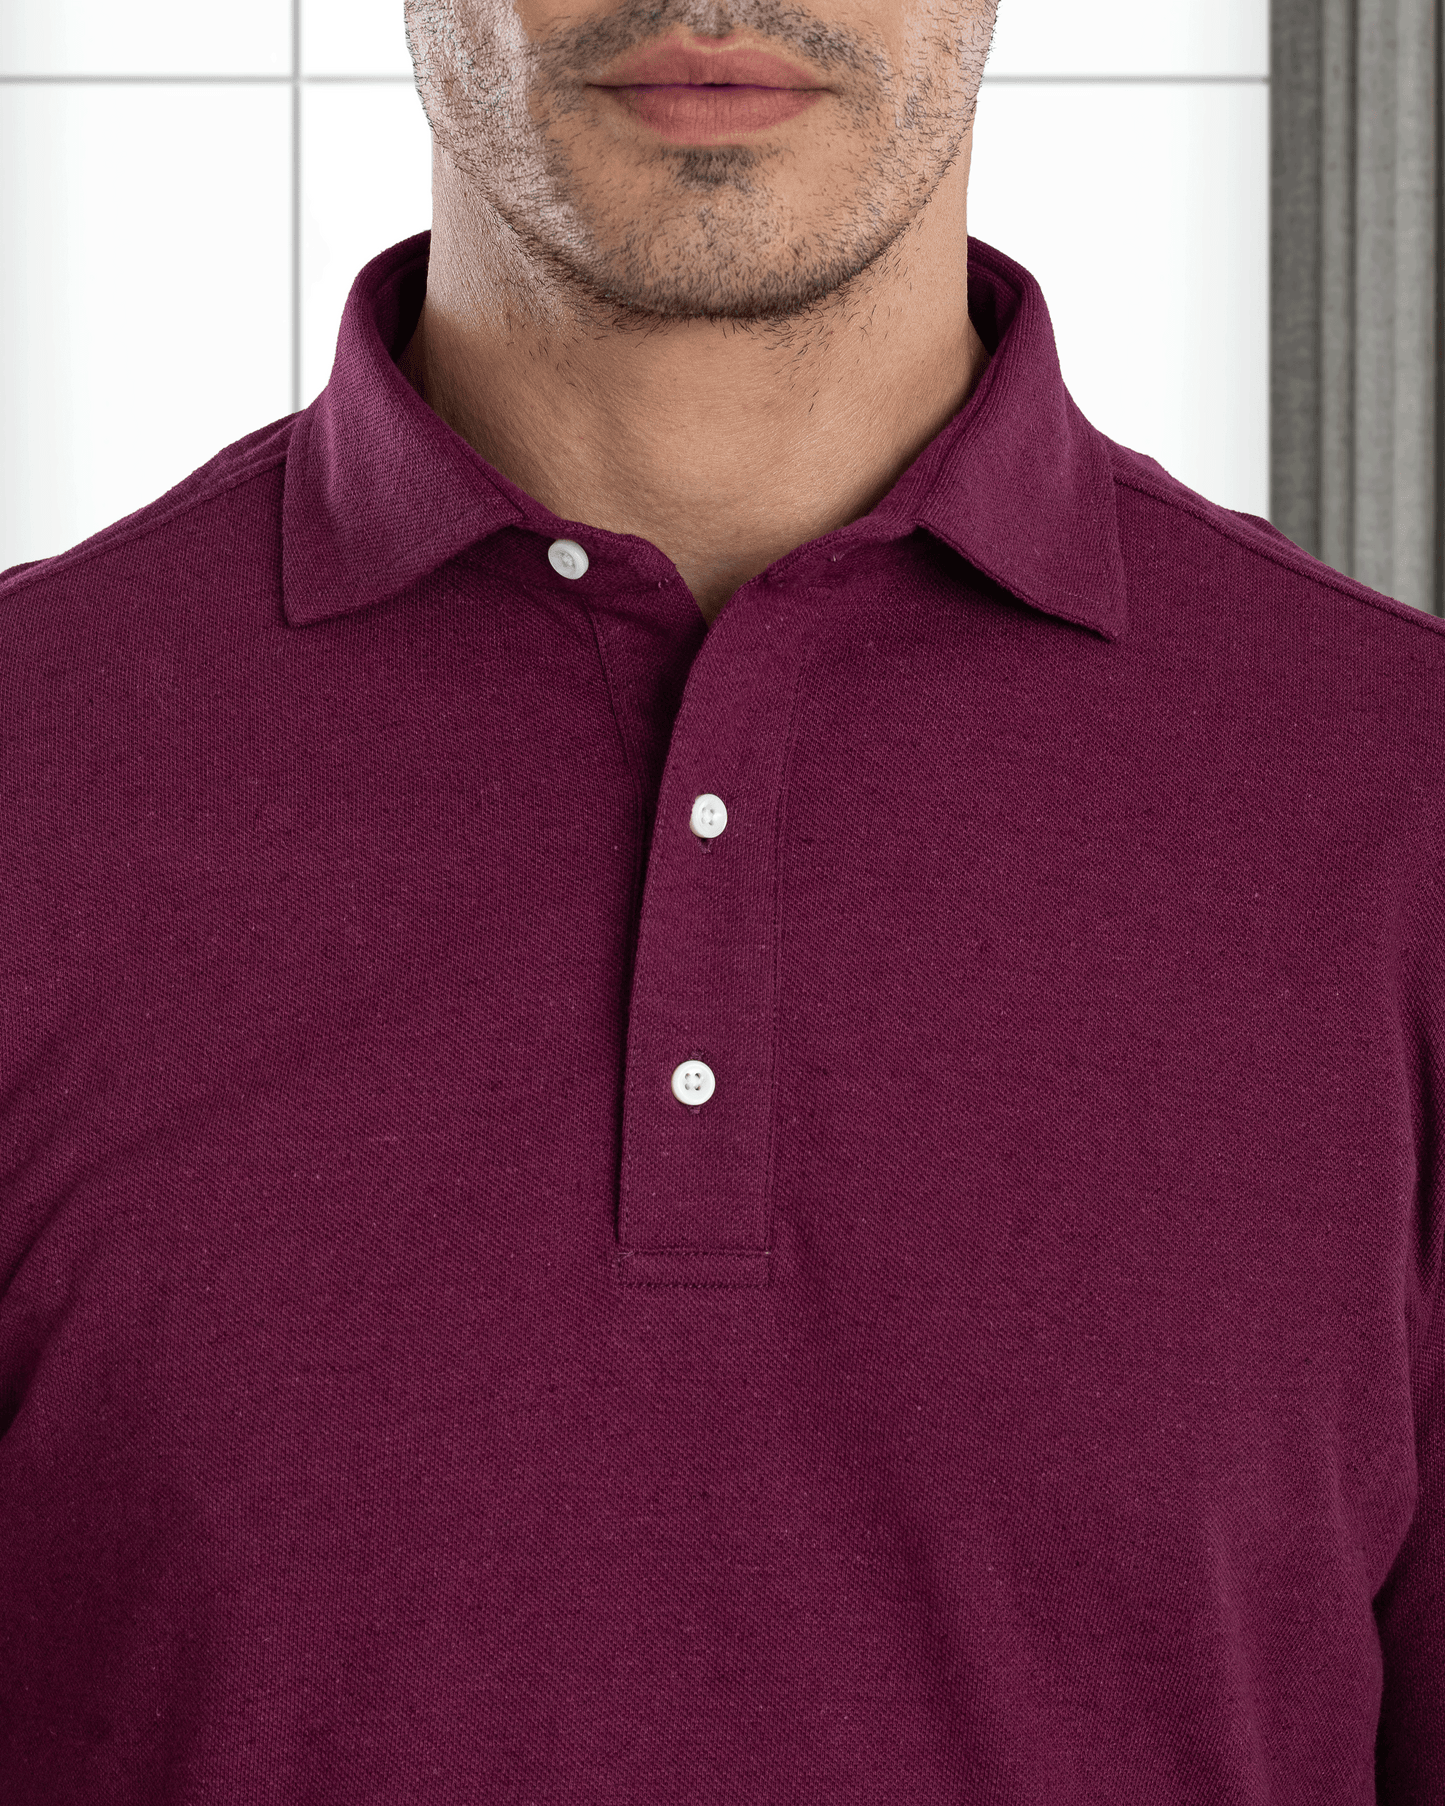 Model wearing mens wool jeans by Luxire in black wearing purple shirt 2